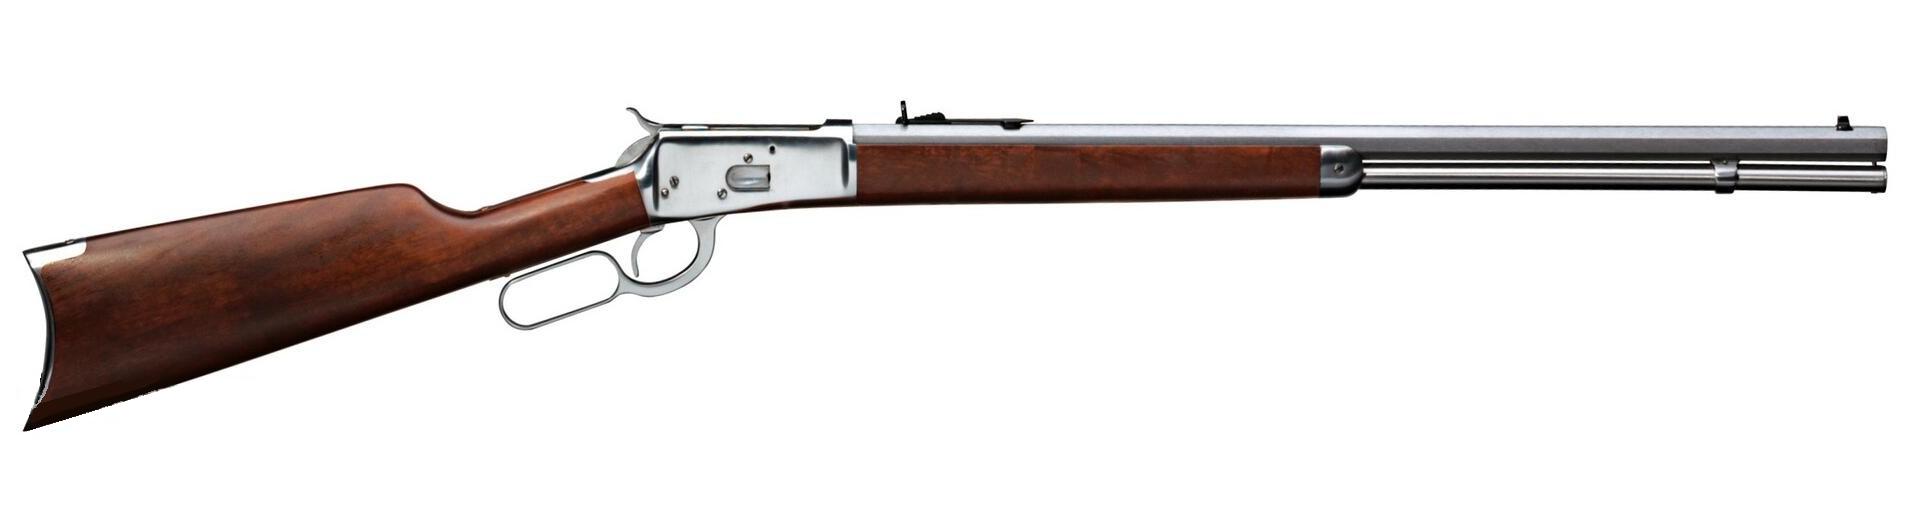 ROSSI Unterhebelrepetierer 1892 M 175 .357 Magnum